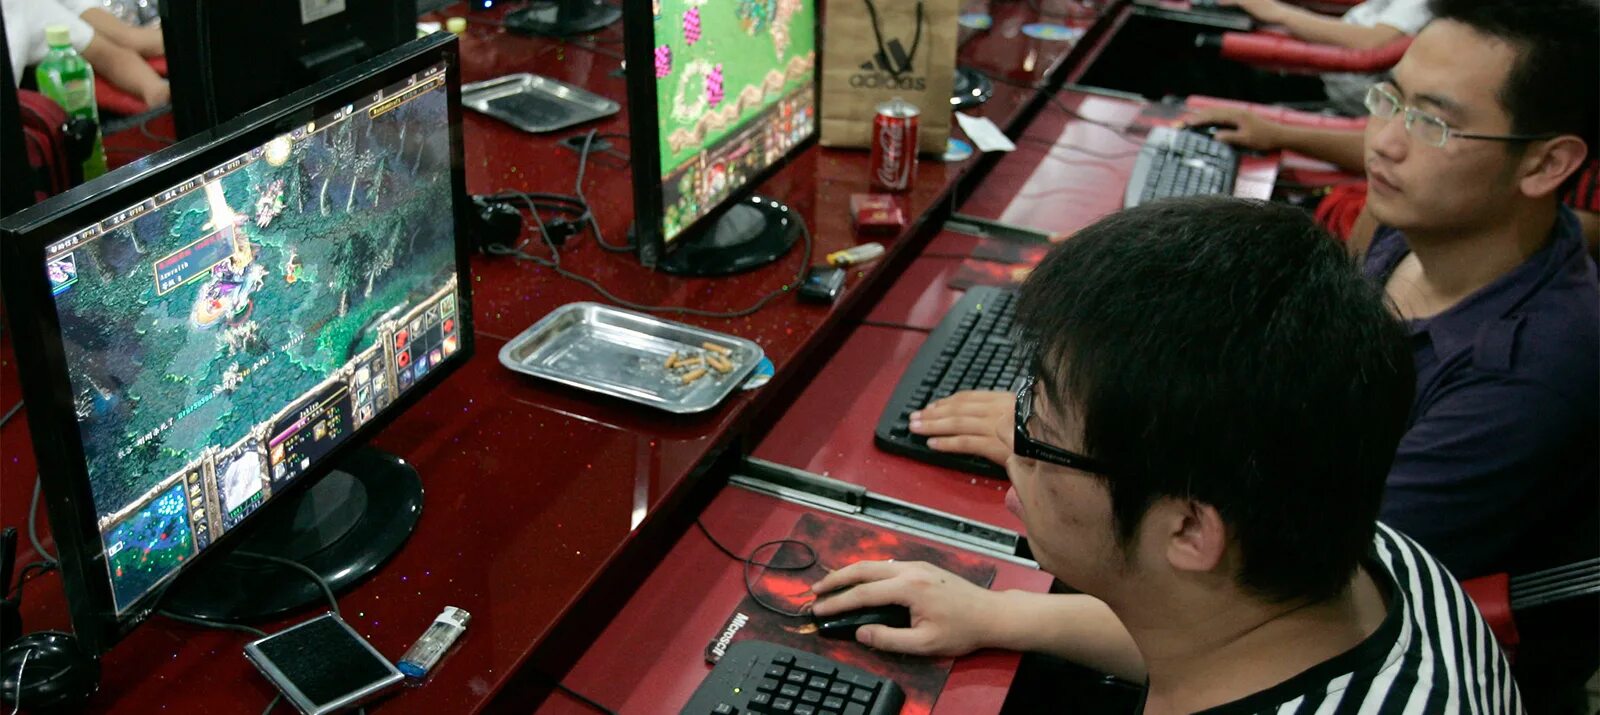 He playing computer games. Игрок в компьютерные игры. Интернет кафе в Китае. Японец за компьютером. Игровая индустрия в Китае.